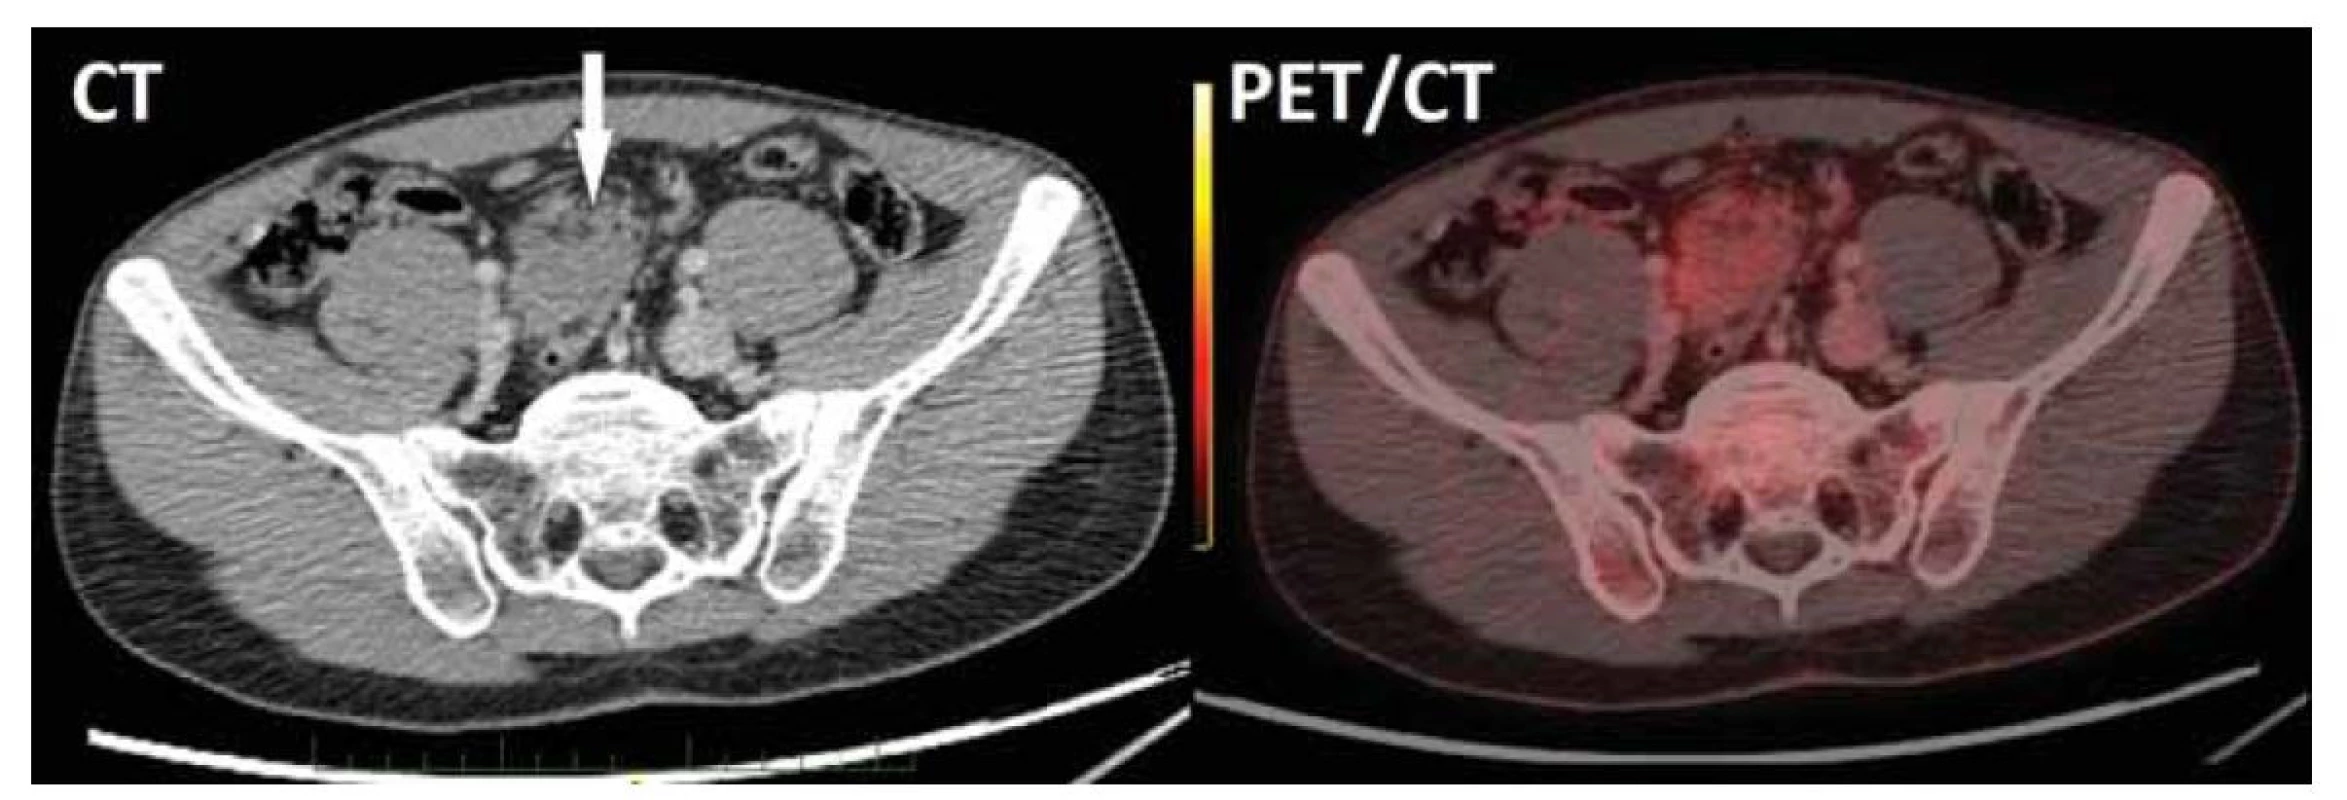 CT vyšetření břicha s nálezem měkkotkáňového útvaru o velikosti 43 x 42 x 39 mm v mezenteriu (šipka) obsahujícího
drobné tukové podíly. PET/CT rekonstrukce potvrdila v mezikličkové lokalizaci nepravidelný solidní útvar s okrajově patrným
fokusem lehce zvýšené akumulace FDG, bez známek lymfadenopatie či eventuální diseminace.<br>
Fig. 1. Abdominal CT scan showed 43 x 42 x 39 mm mesenteric soft tissue lesion containing small adipose areas. PET/CT reconstruction
confirmed irregular solid interloop lesion with slightly higher FDG uptake in marginal area and no signs of lymphadenopathy
or dissemination.